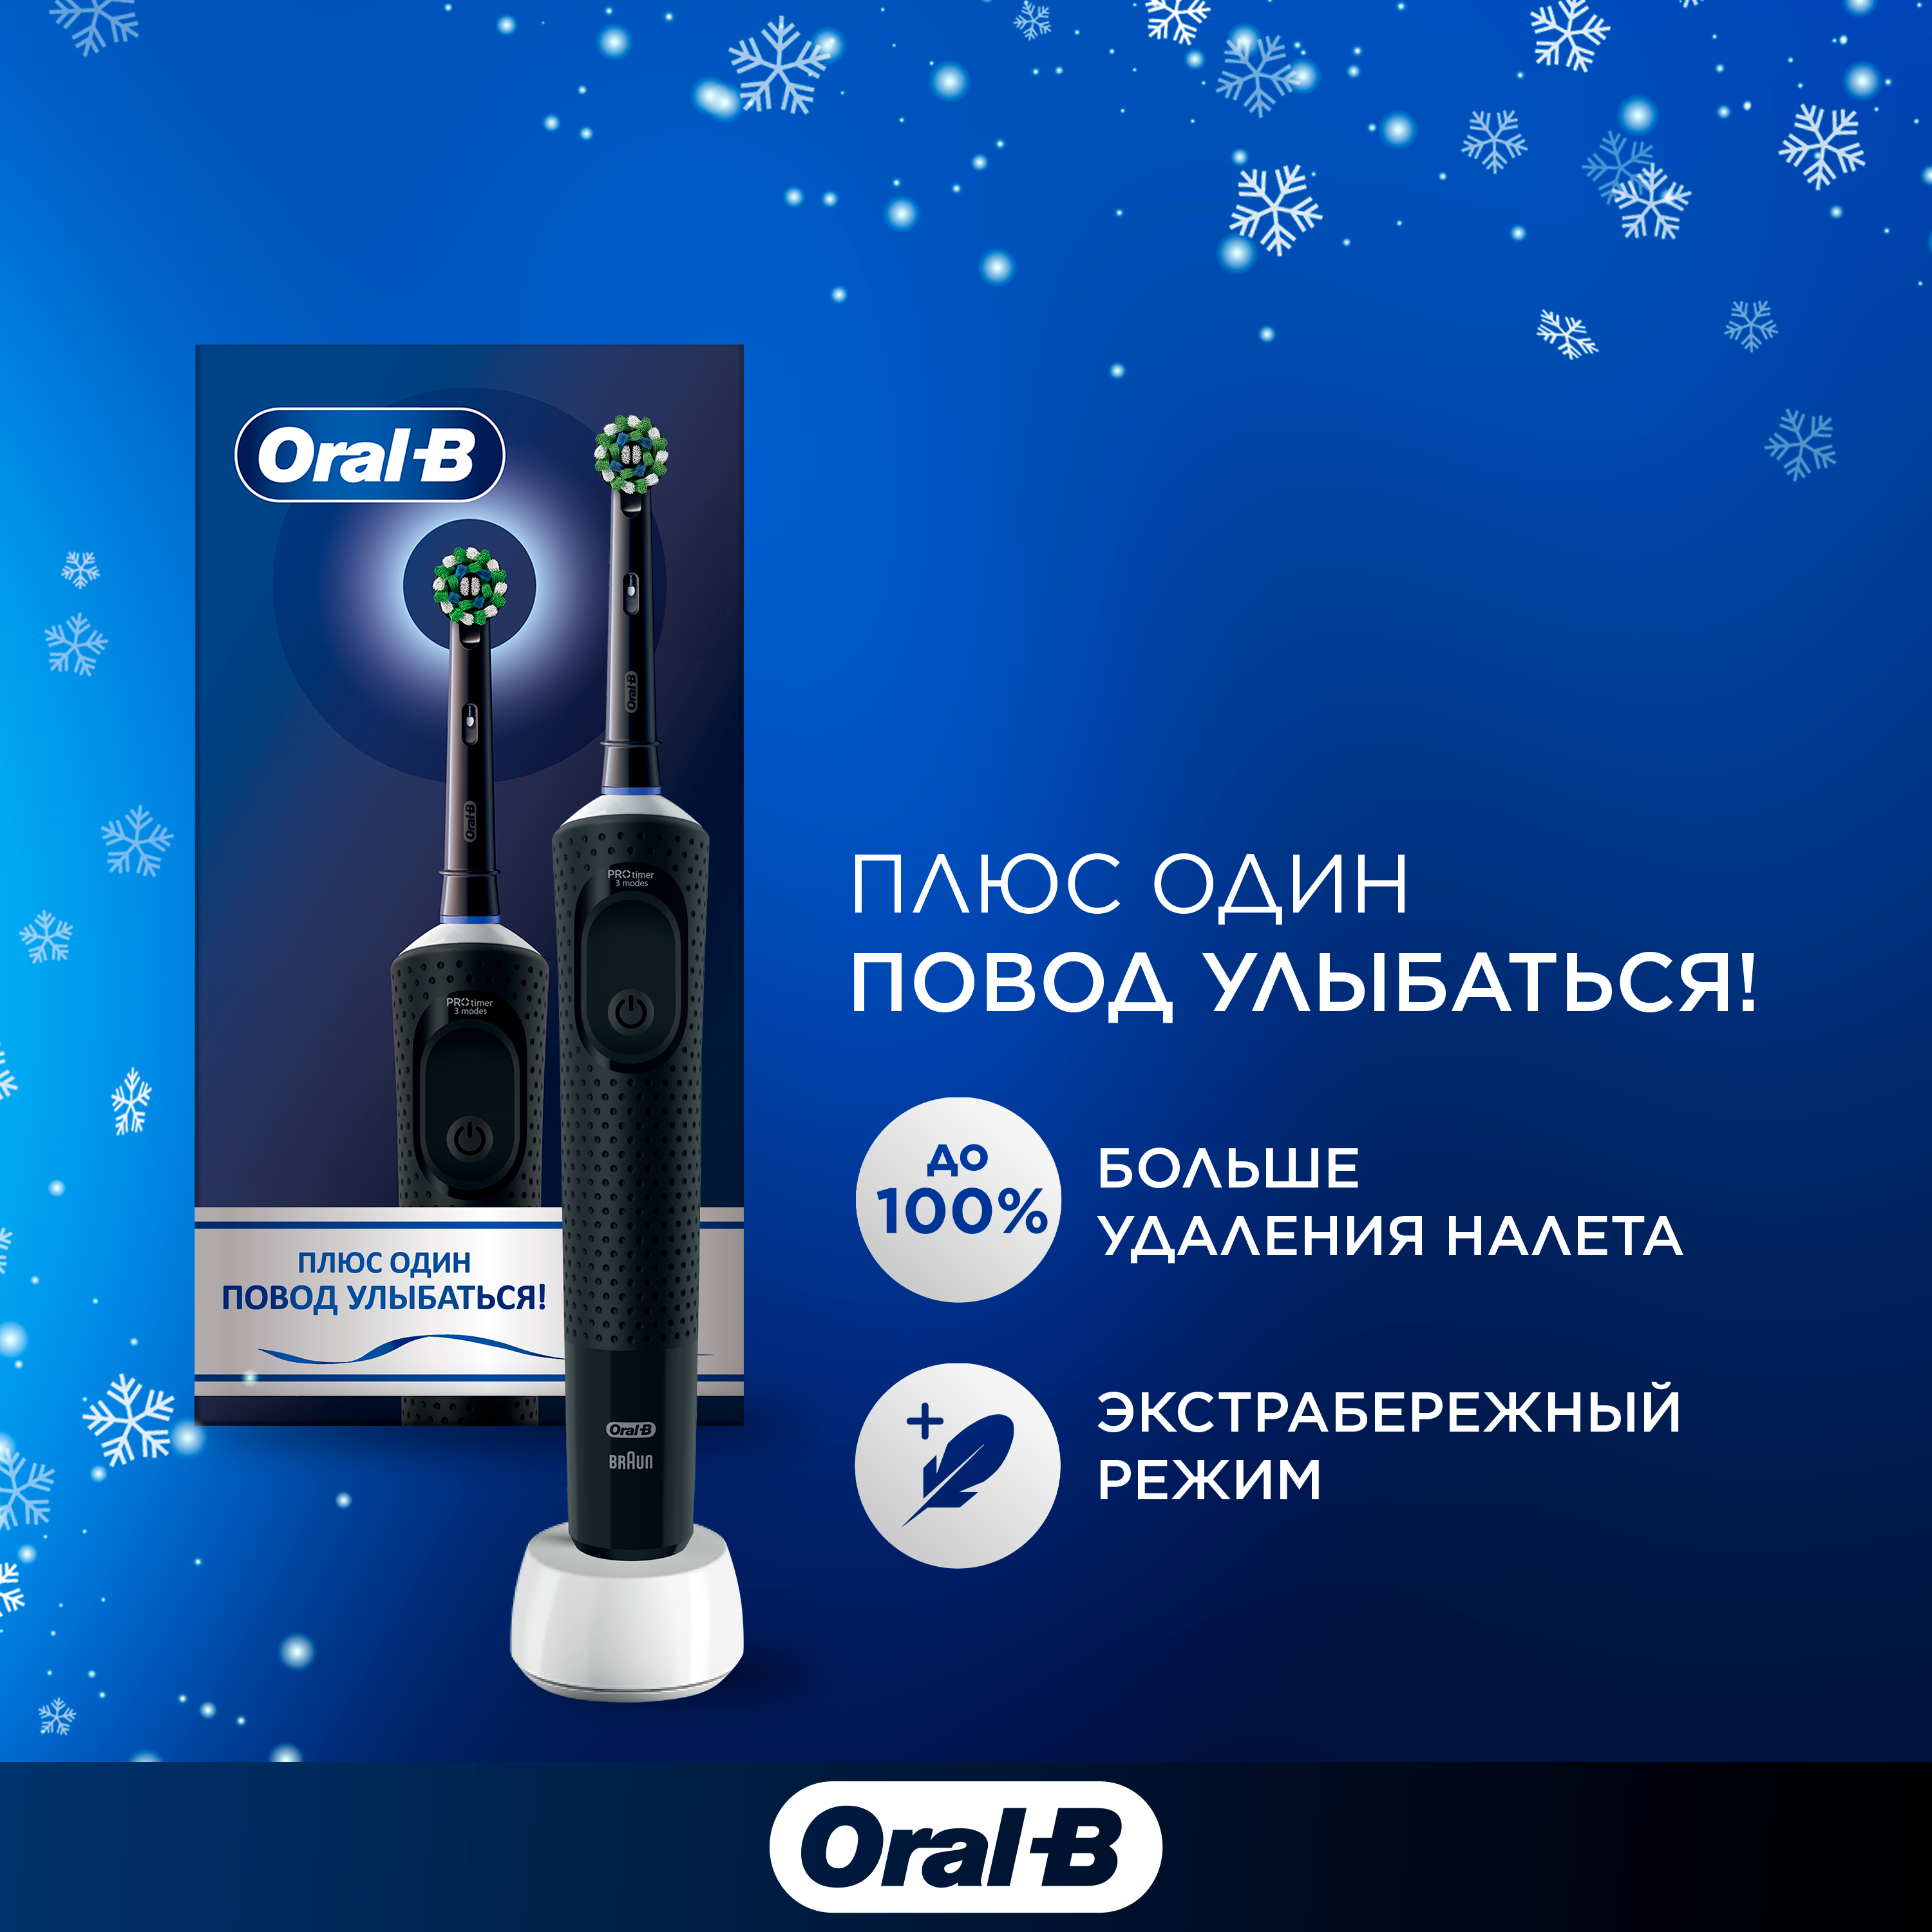 Электрическая зубная щетка ORAL-B Vitality Pro D103.413.3 Black подарочный набор тип 3708